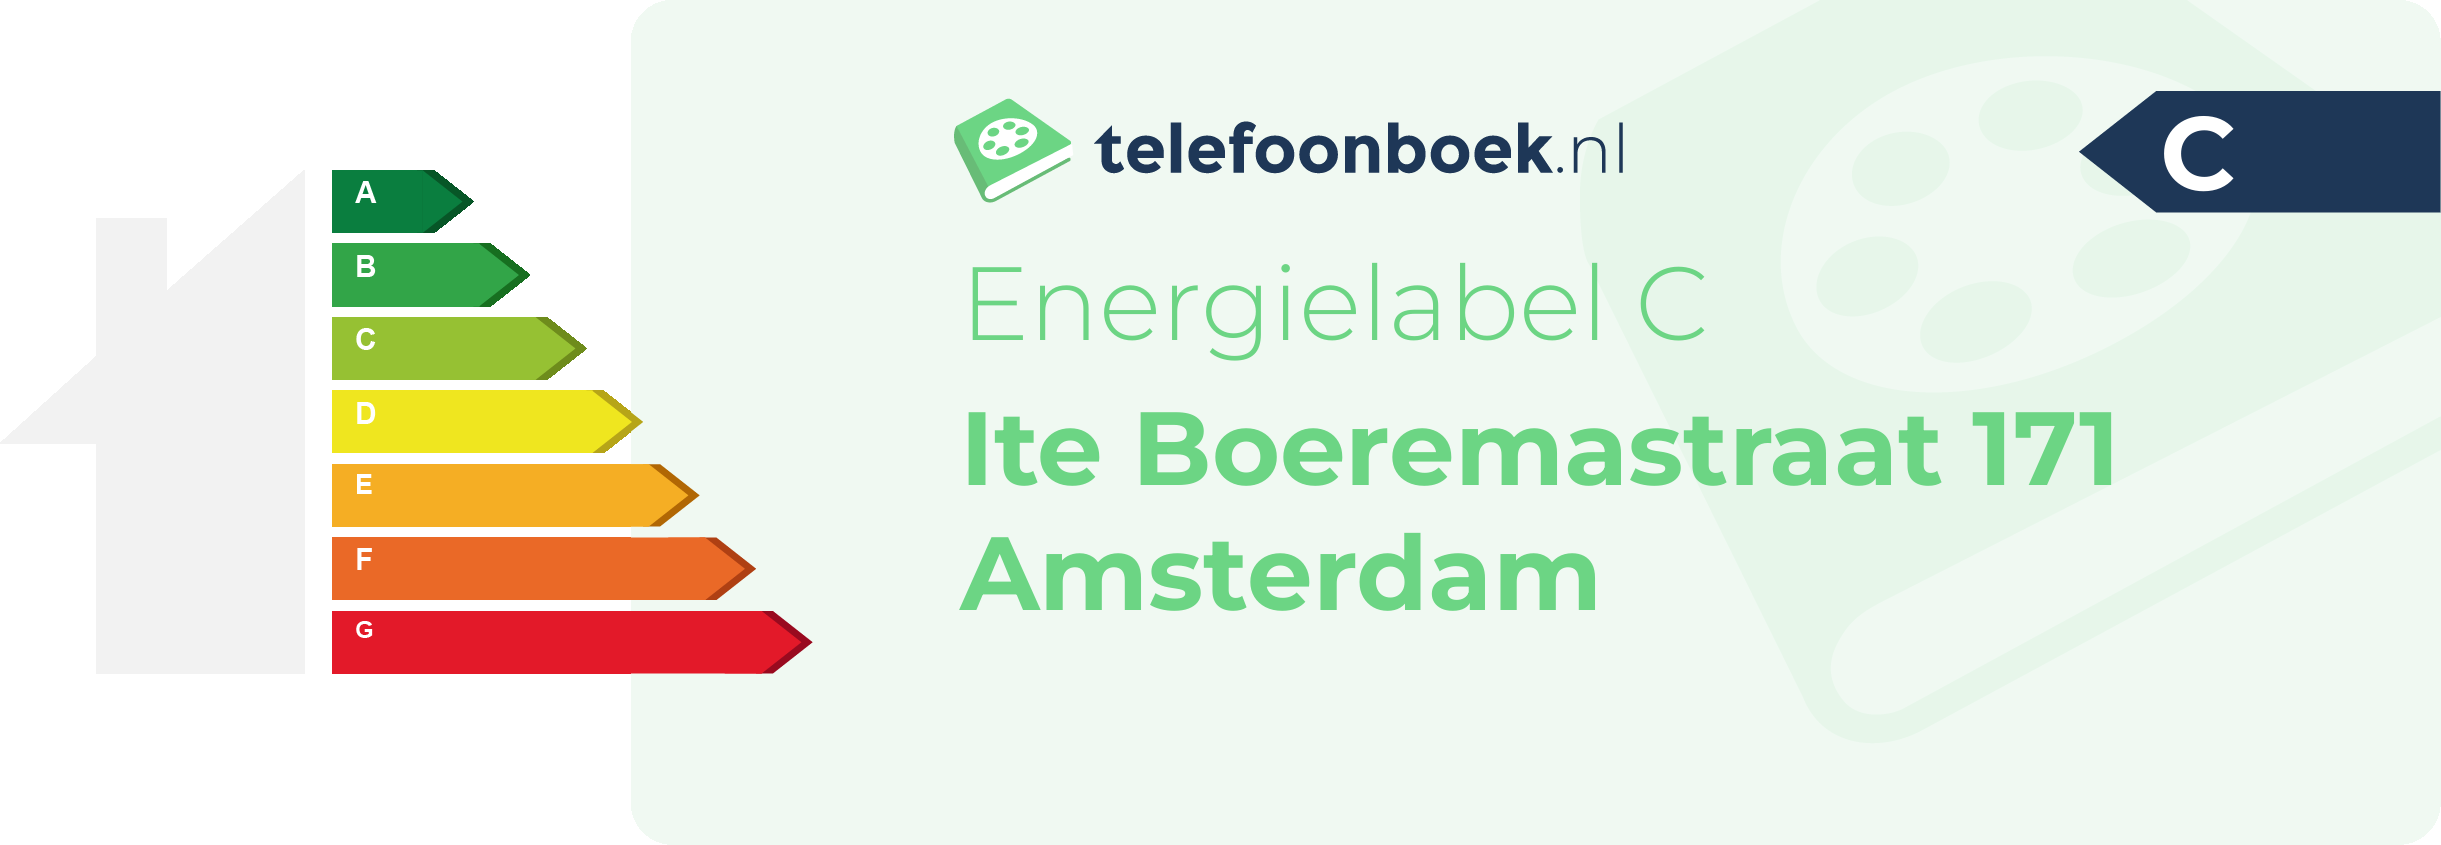 Energielabel Ite Boeremastraat 171 Amsterdam